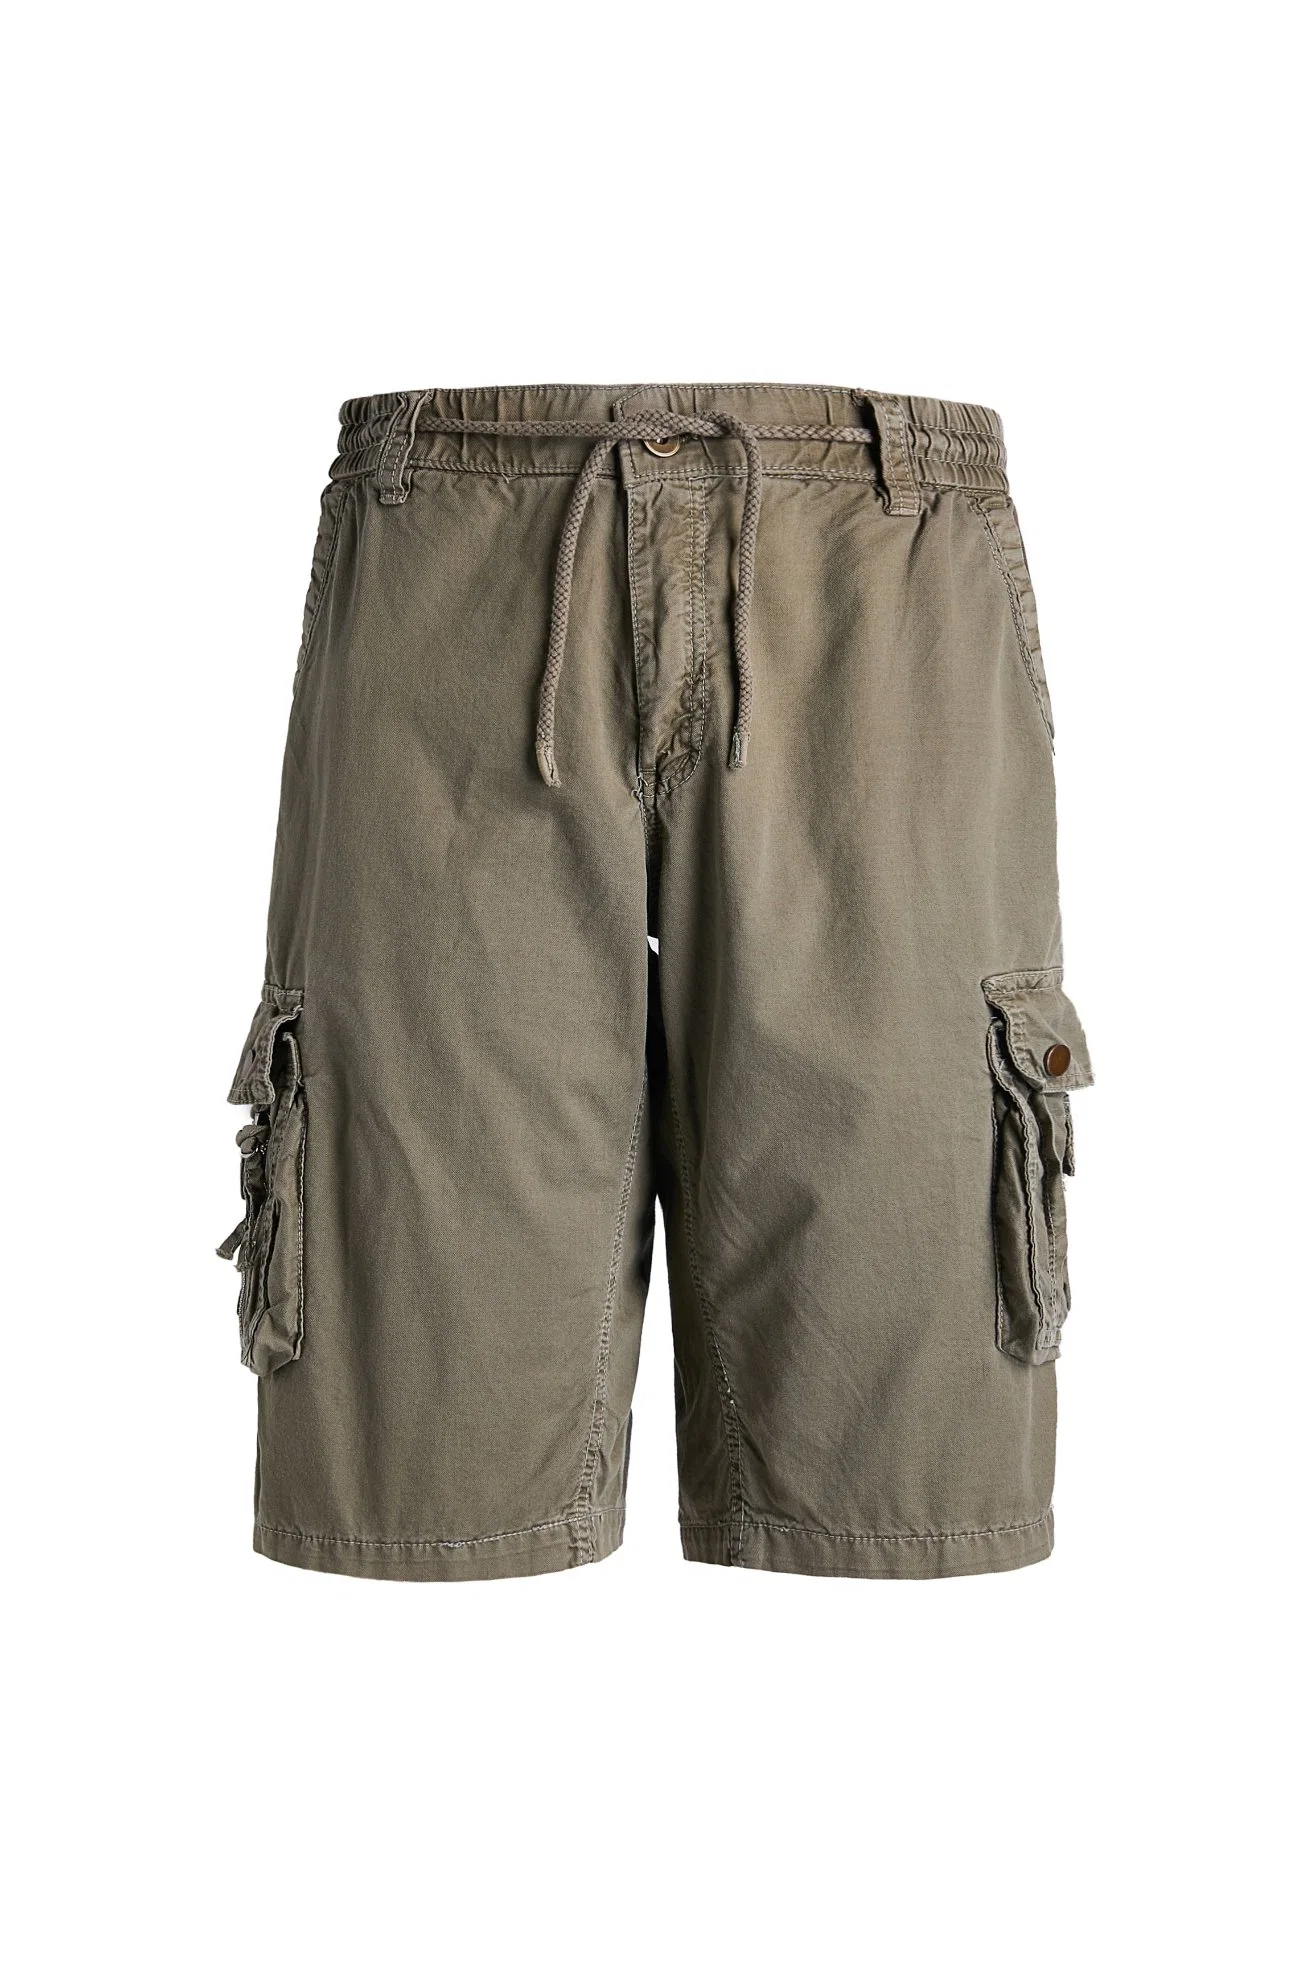 La Mens Cargo Shorts Shorts ropa deportiva Wasitband tejido elástico con una cuerda